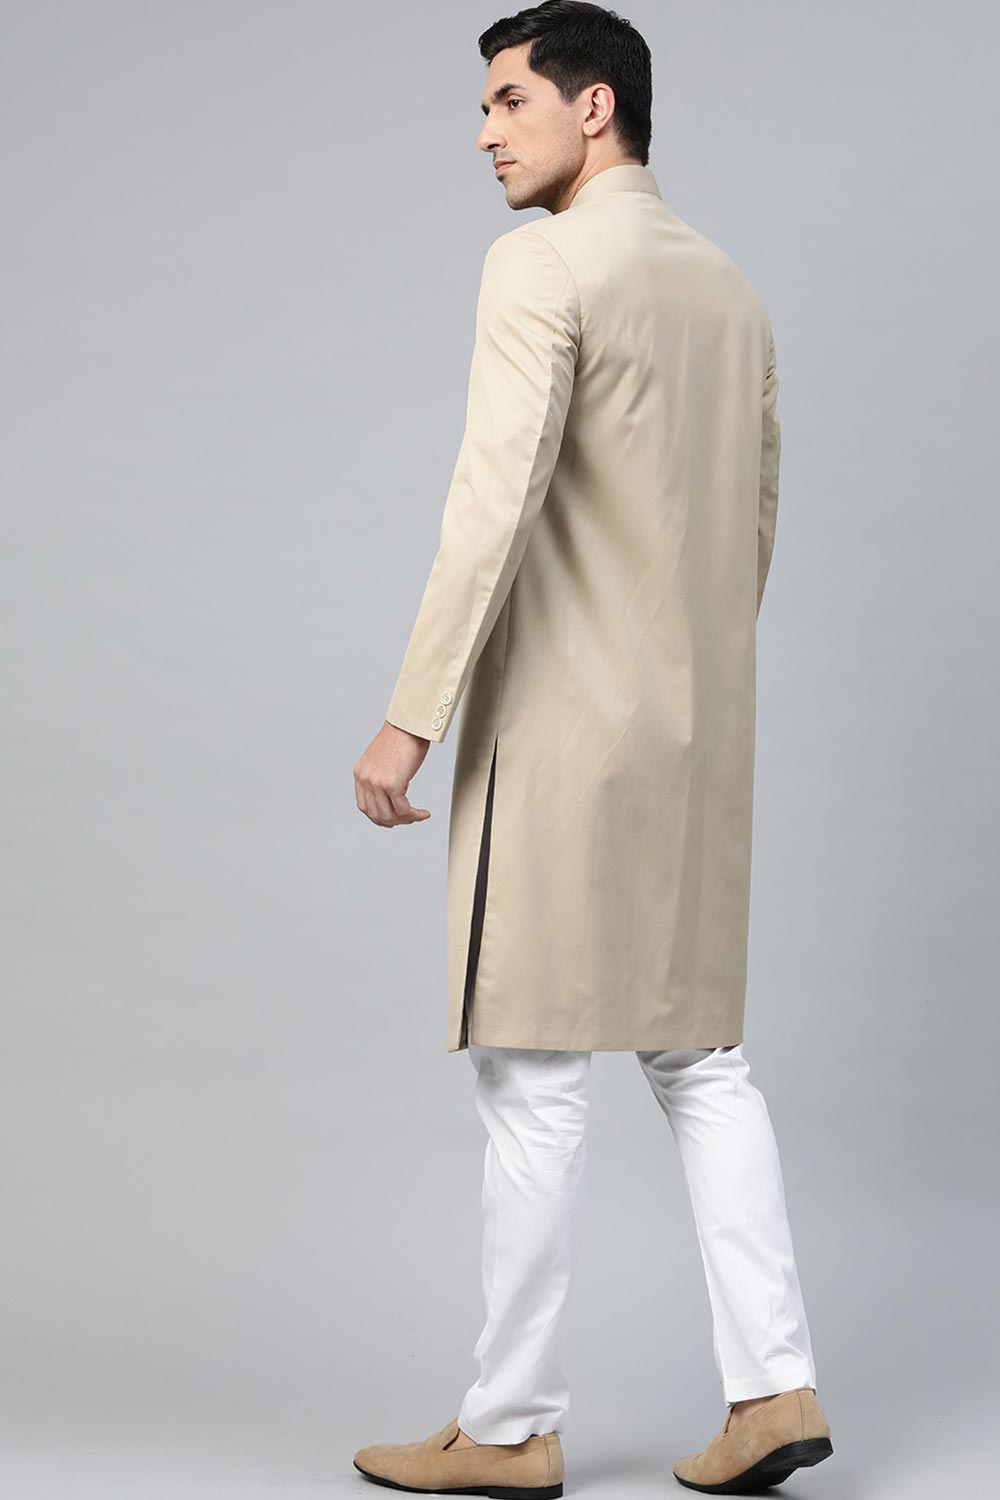 Buy Men's Art Silk  Solid Sherwani Set in Fawn  Online - Side